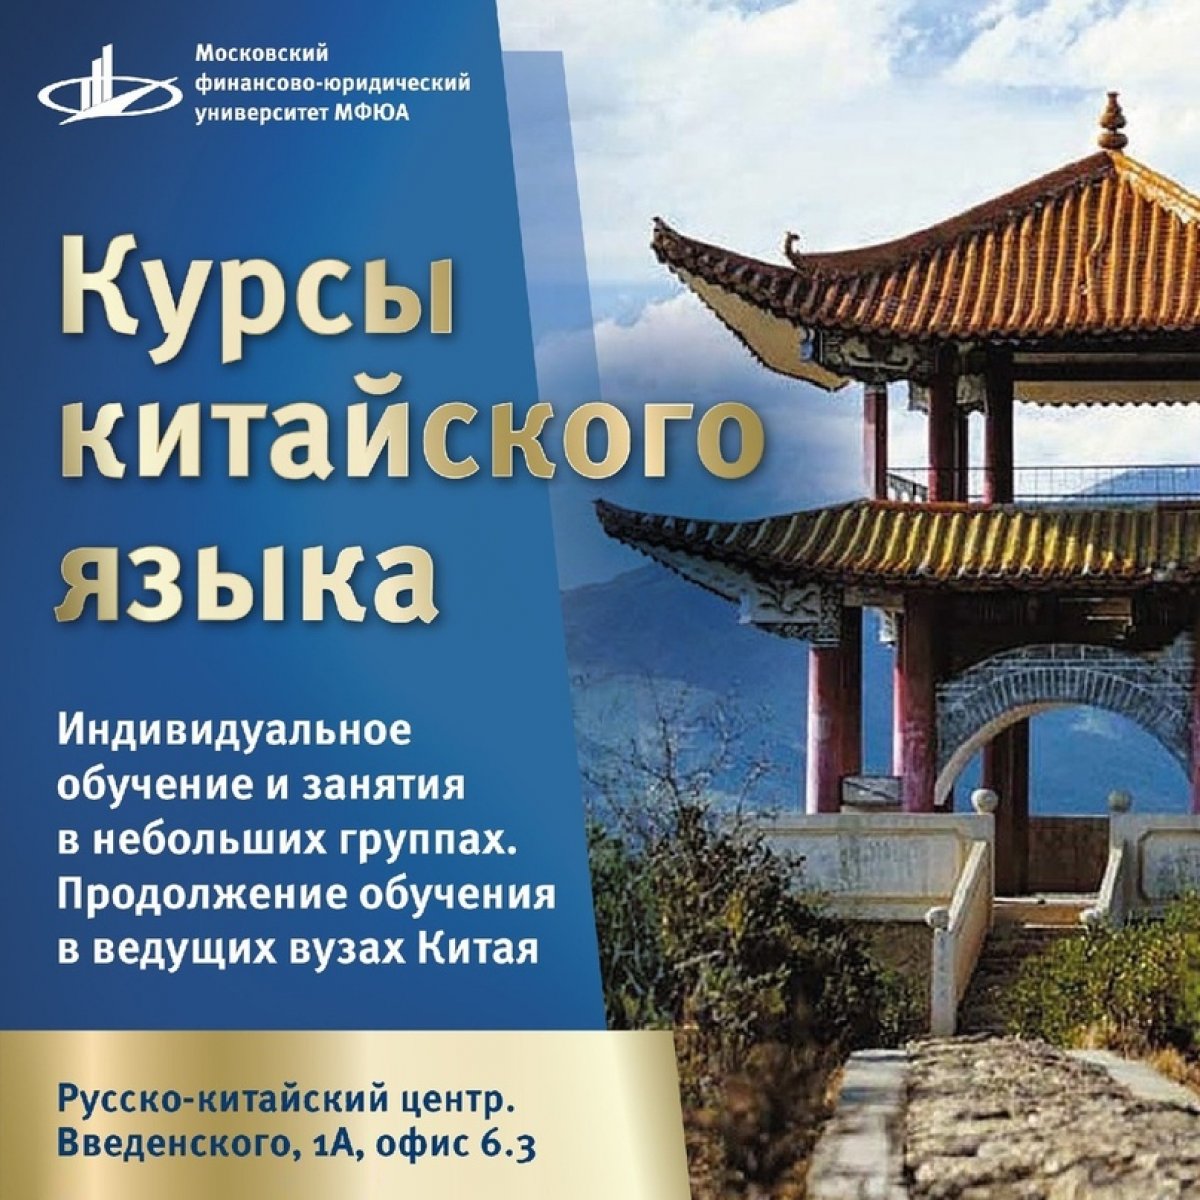 🇨🇳Студенты МФЮА, Русско-китайский Центр объявляет набор на курсы китайского языка!